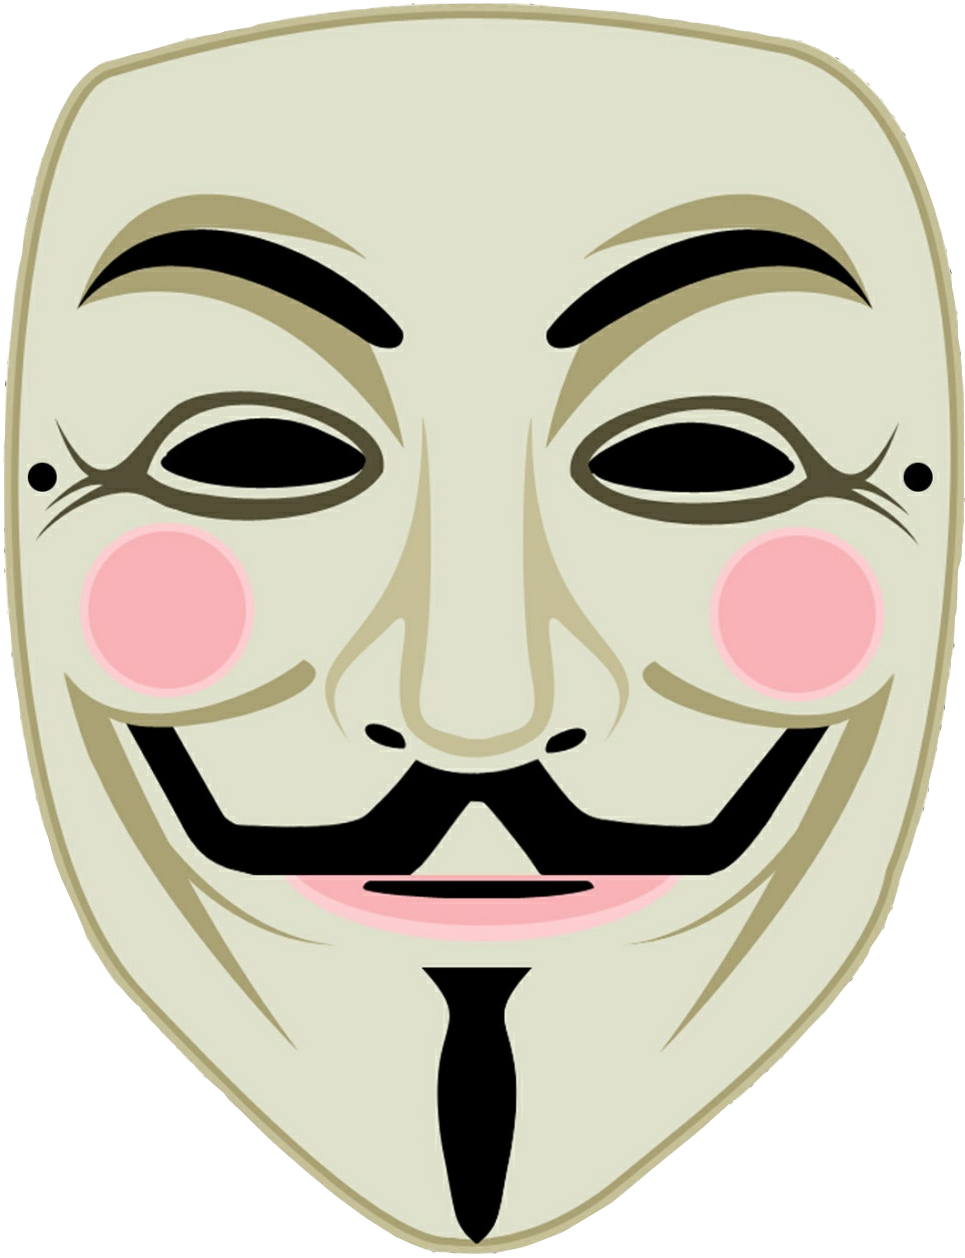 Gunpowder Plot Guy Fawkes mask V for Vendetta Anonymous v for